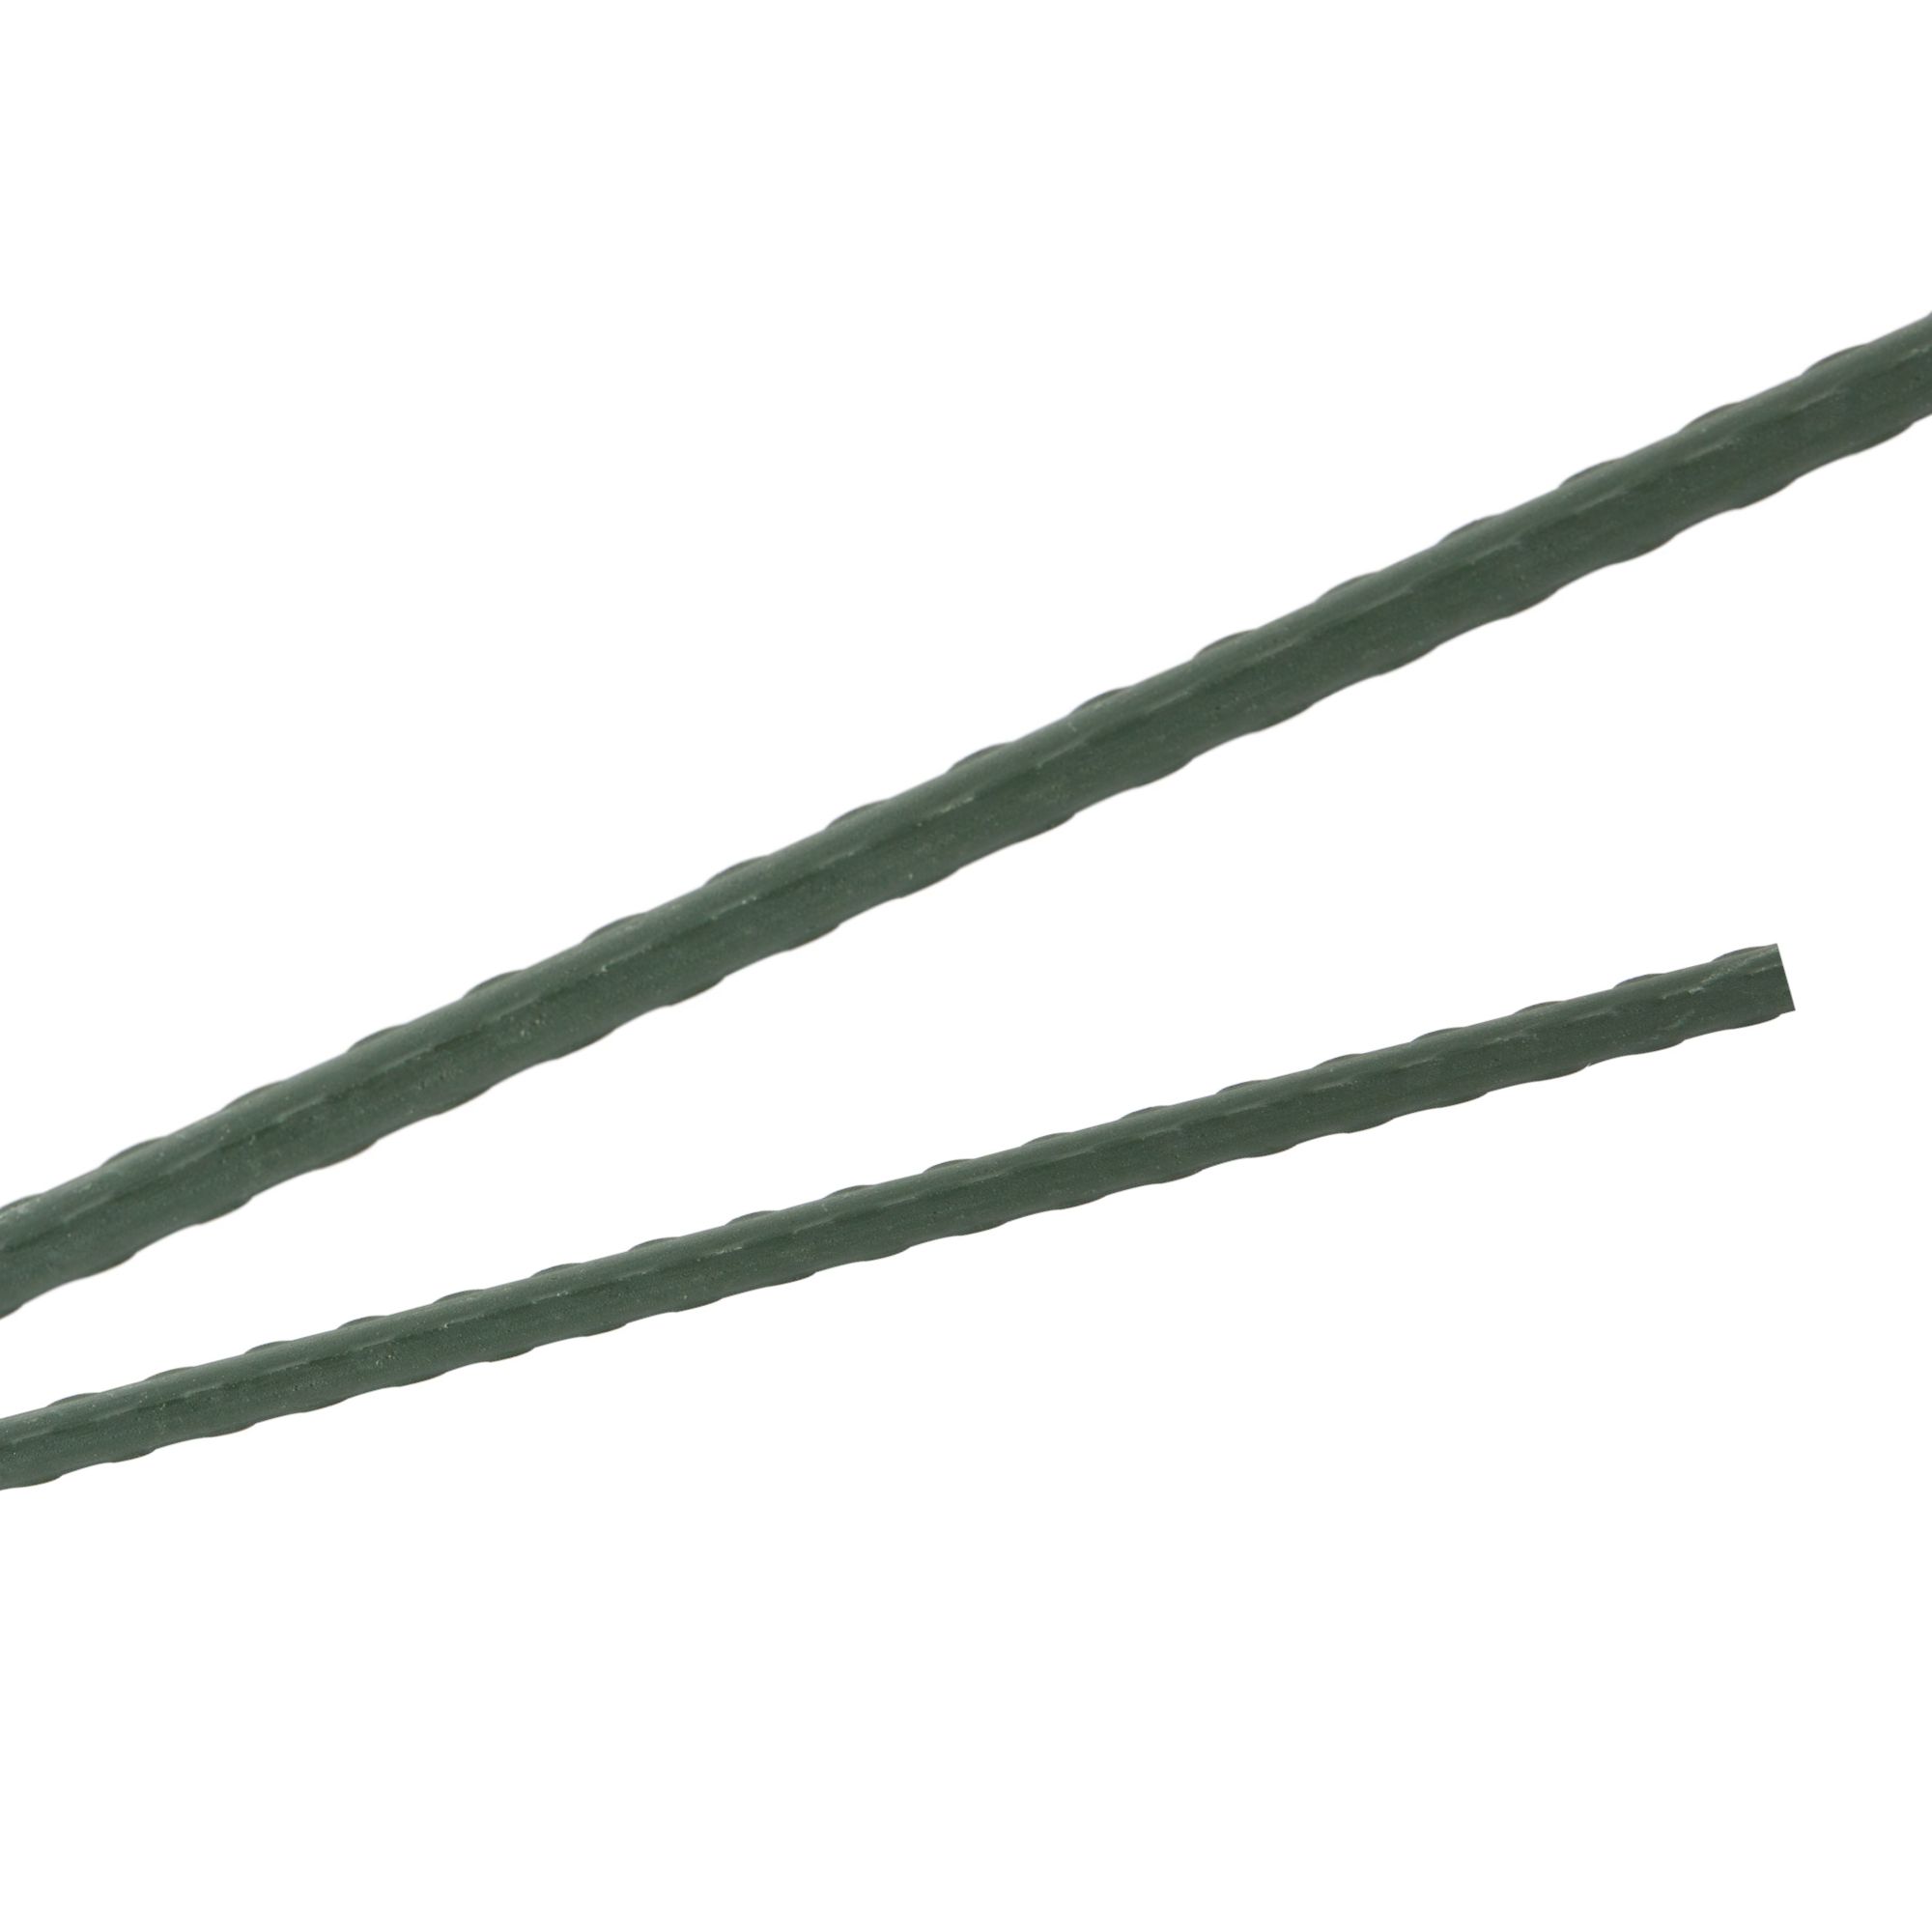 Tyč podpěrná, 8mm, 90cm, kov+PVC, zelená 0.052000 Kg GIGA Sklad20 211783 164